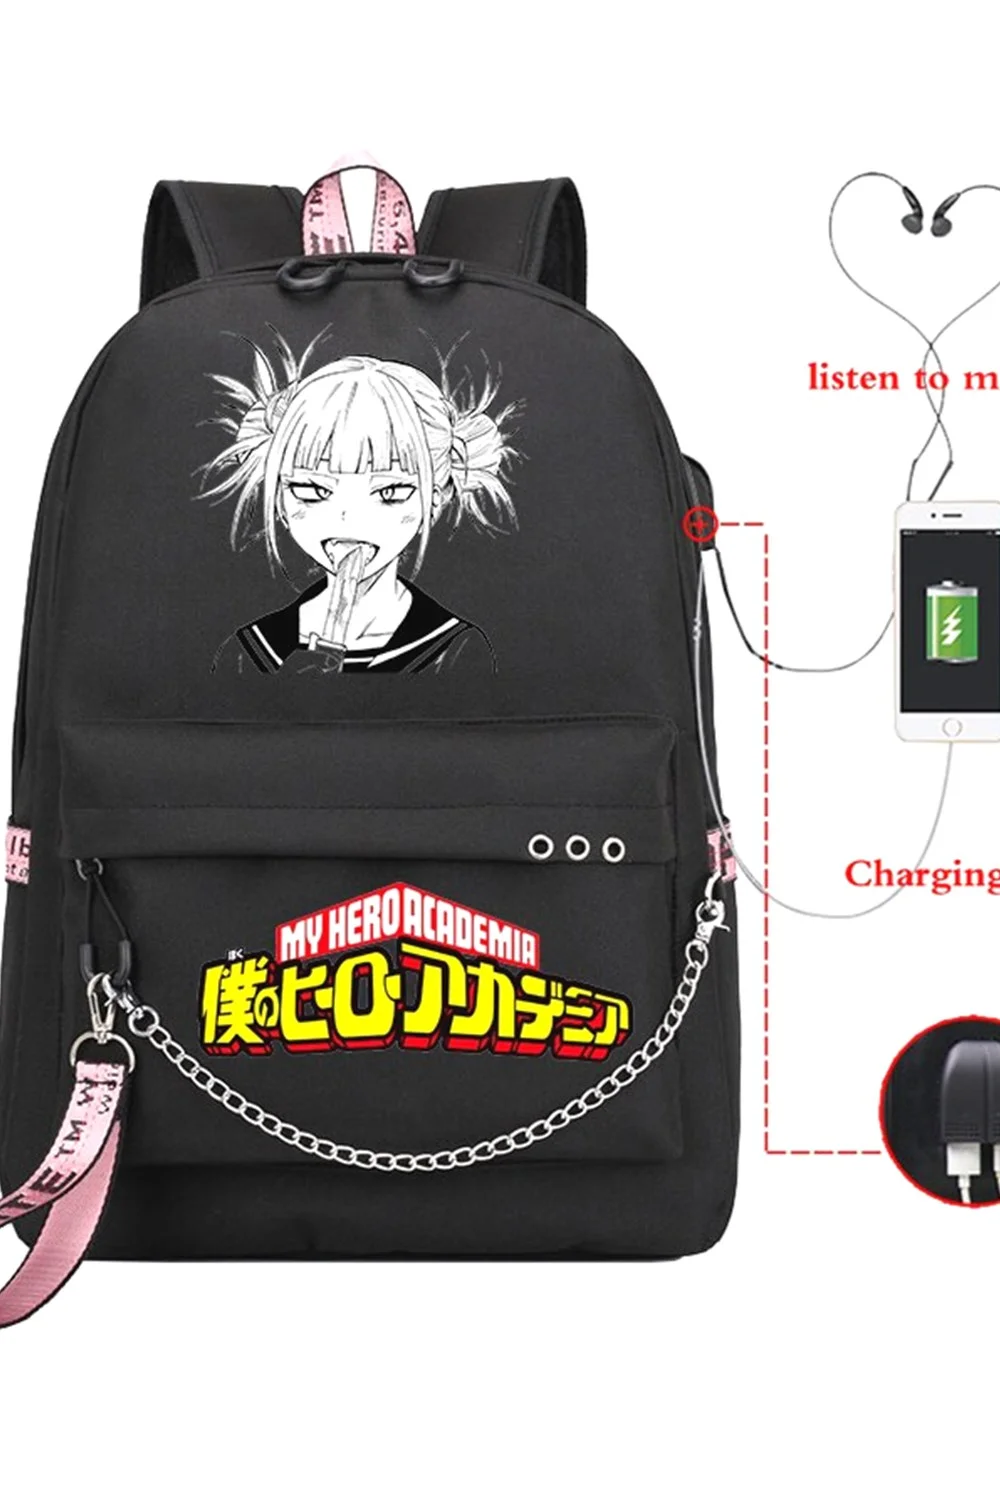  Boku No Hero Academia Himiko Toga Anime School Bag Mochila Usb Charging Backpack My Hero Academia Girls School Bag Mochila 921-1